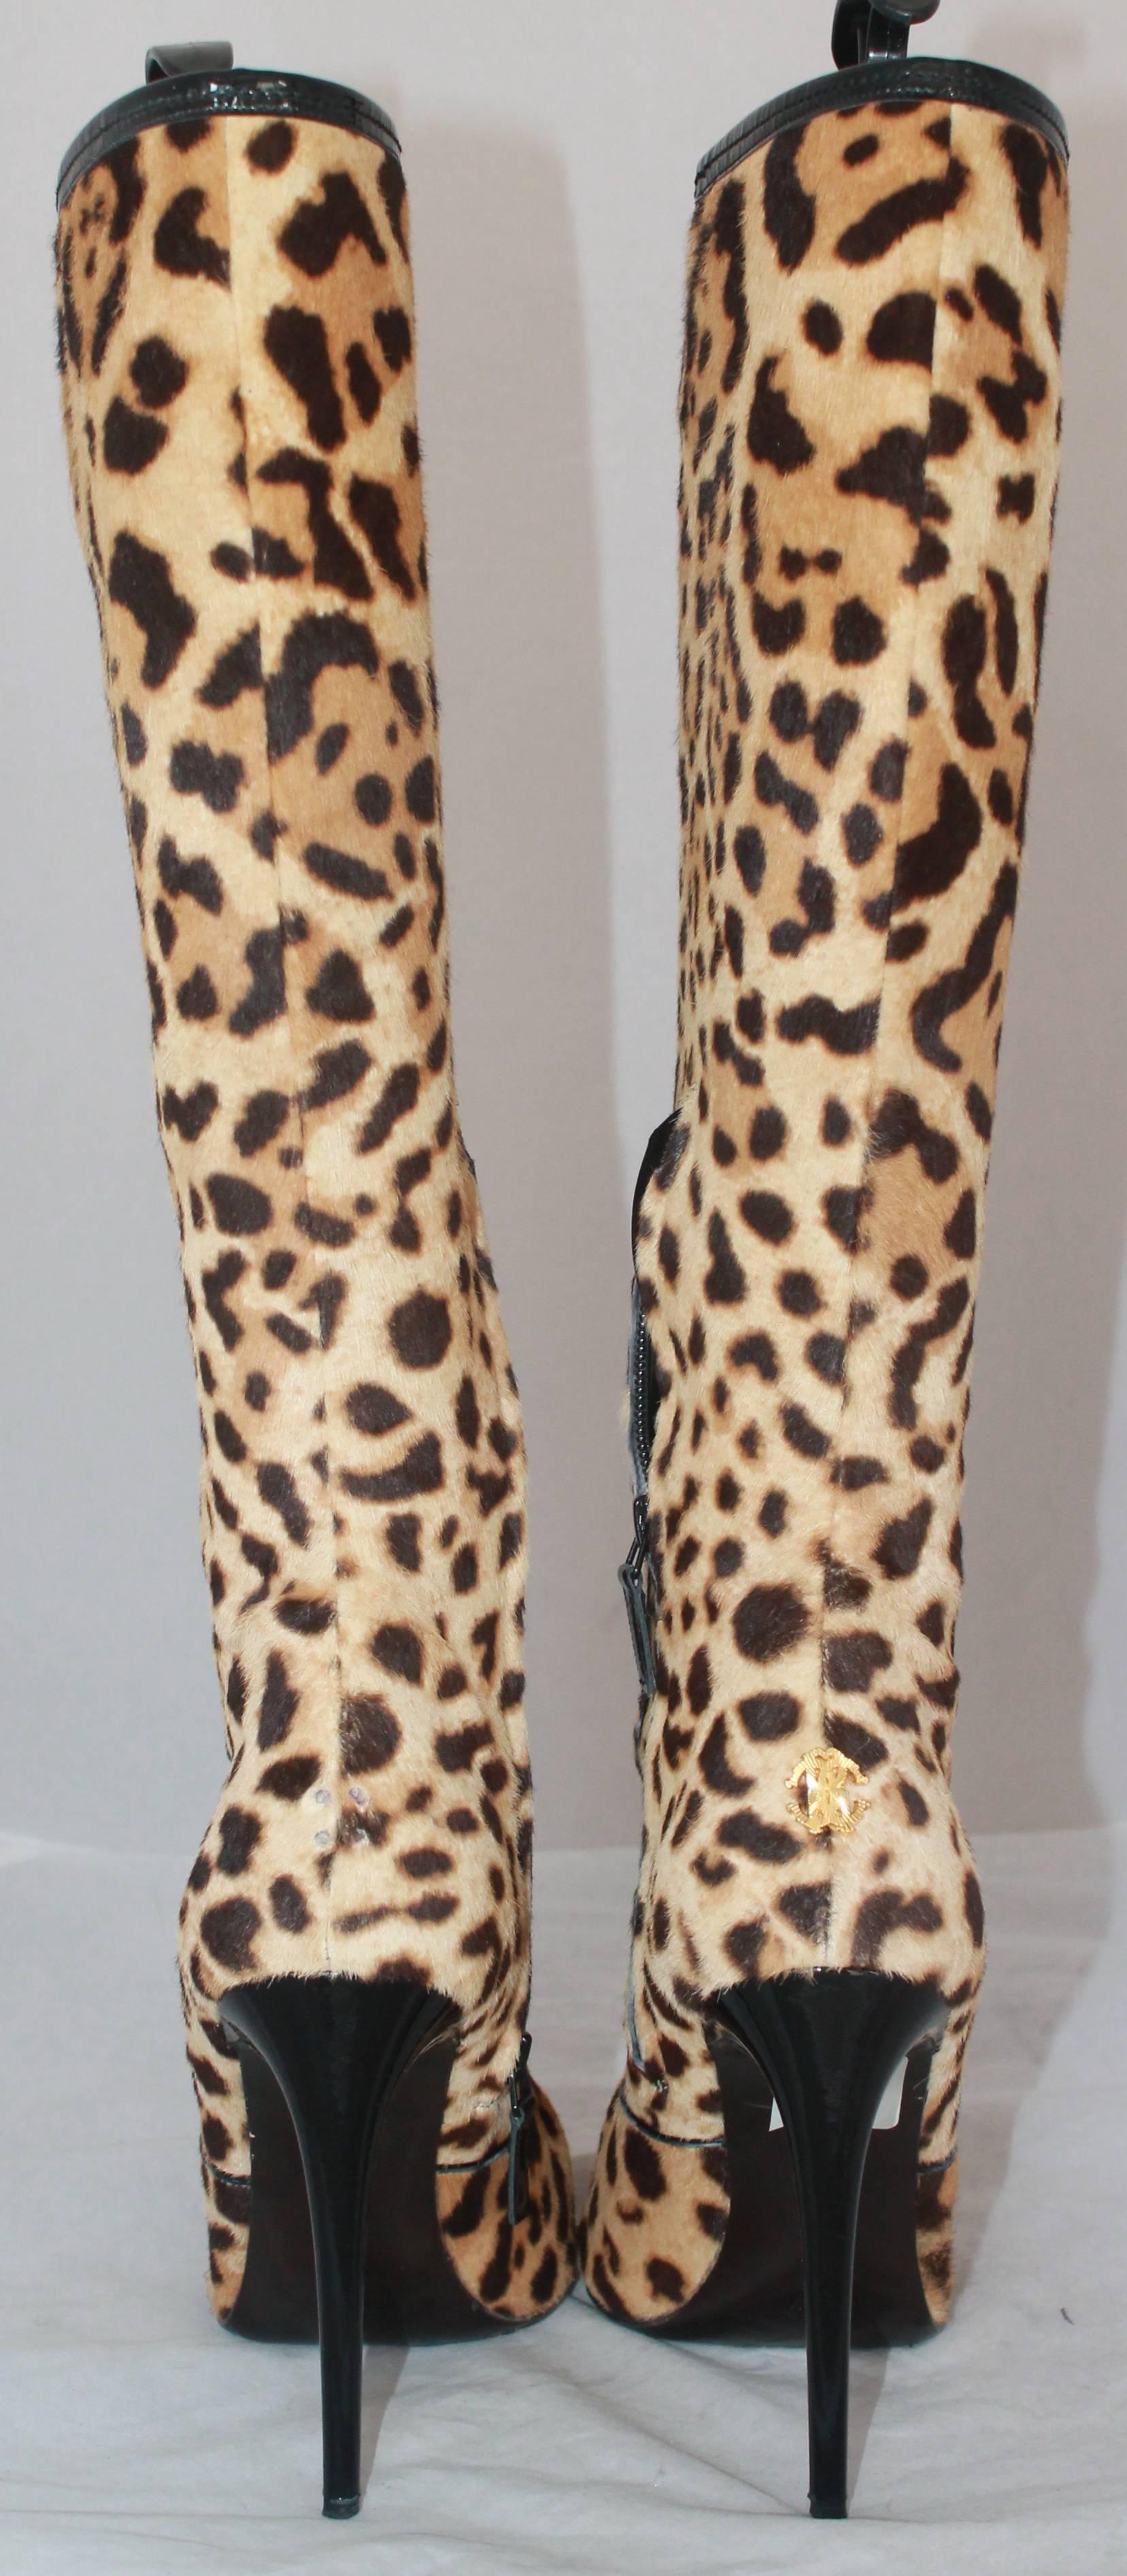 Beige Roberto Cavalli Leopard Print Pony Hair Knee High Stilleto Boots - 40